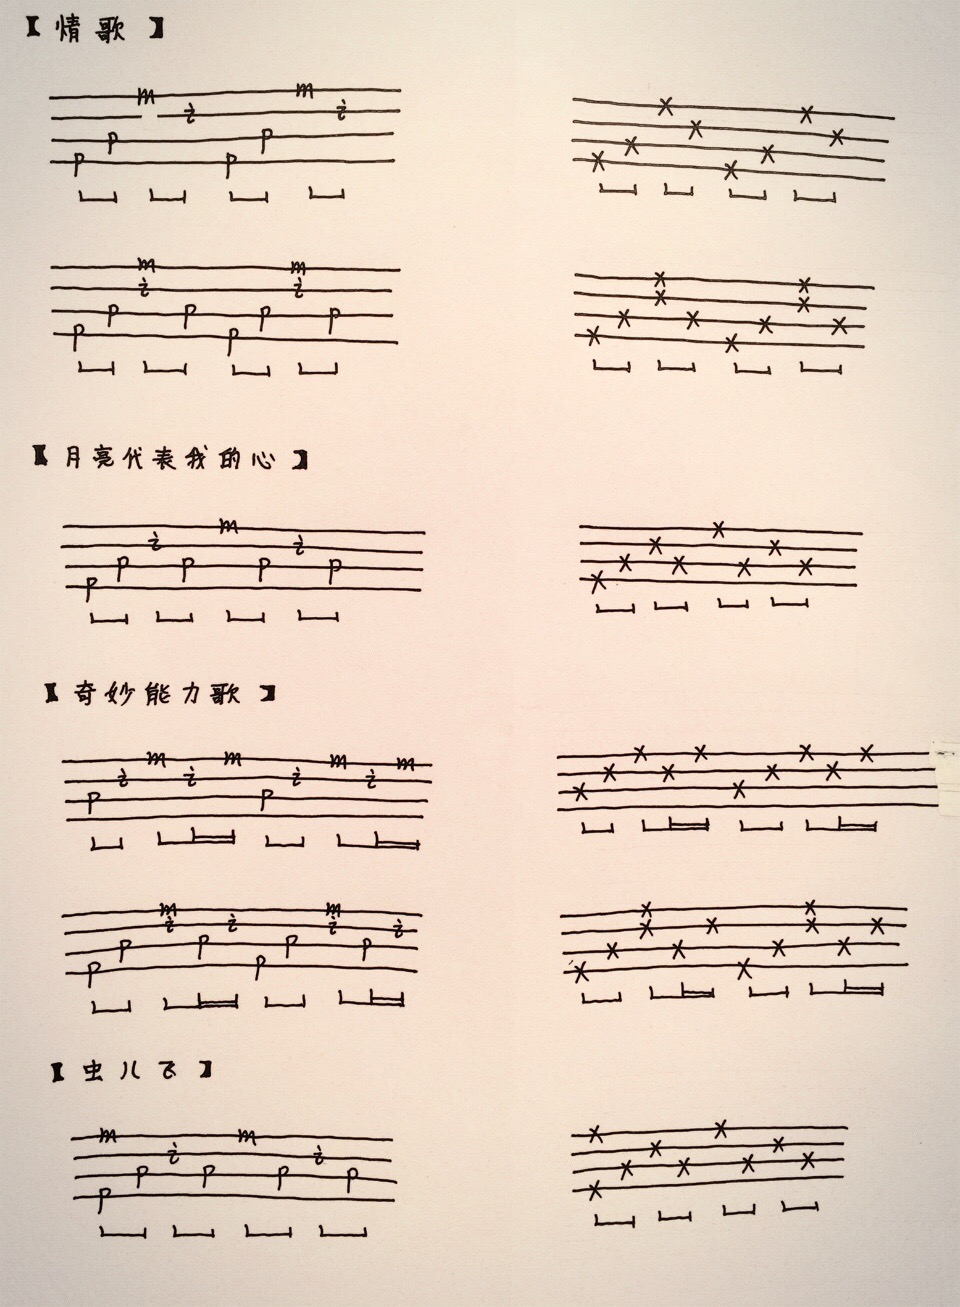 尤克里里常用和旋及节奏型